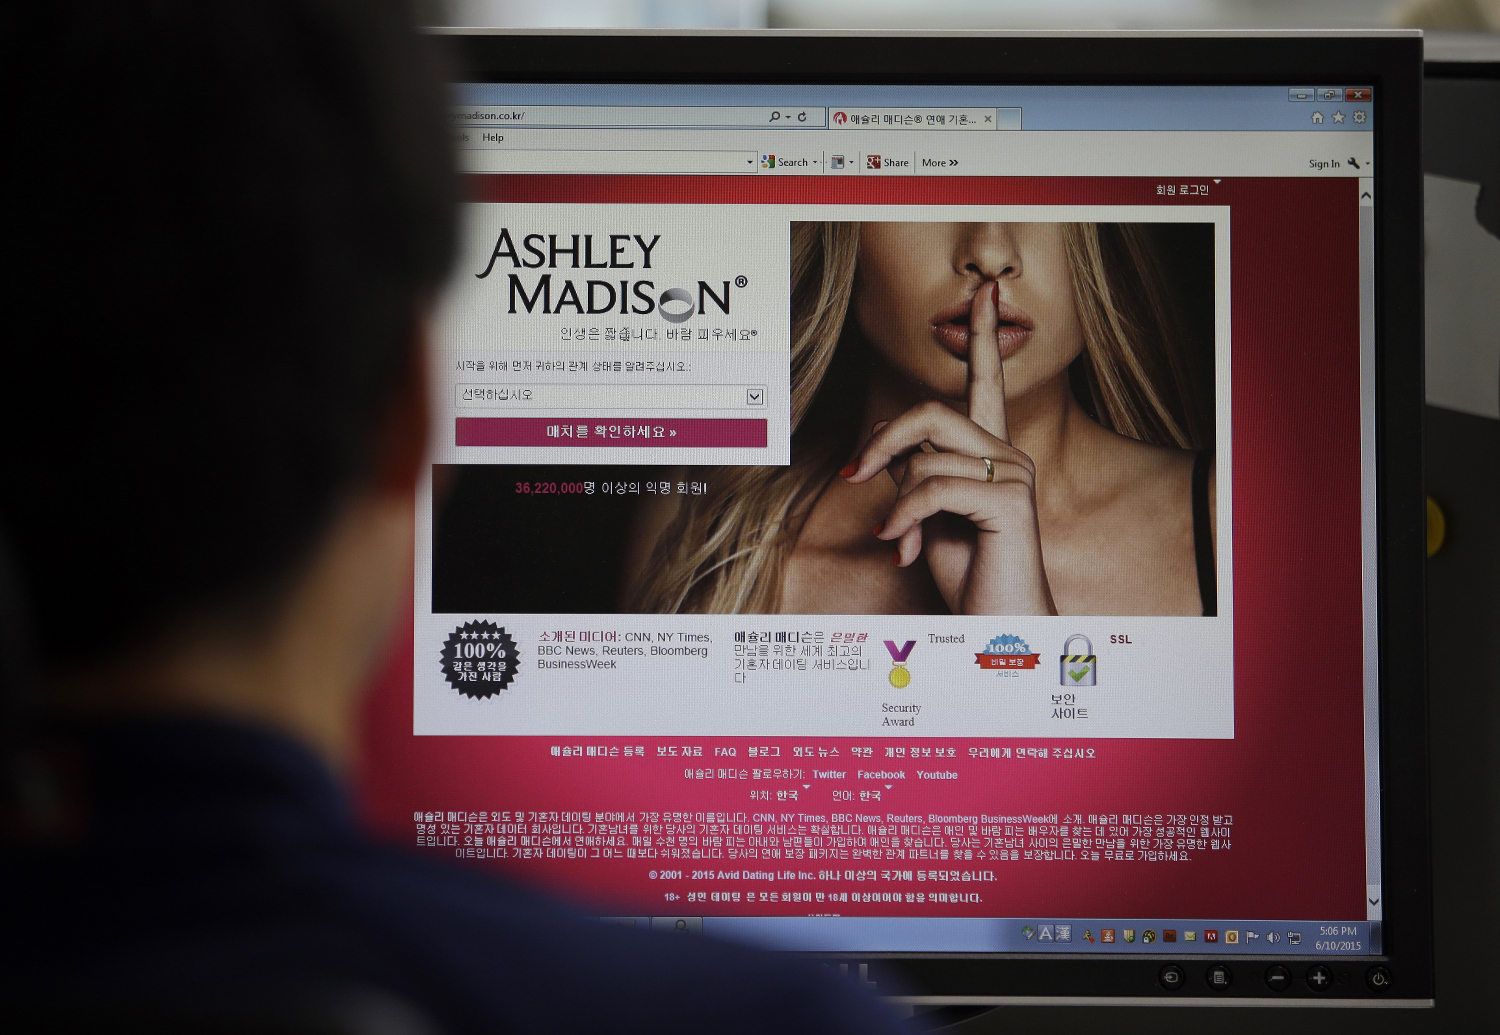 La web de citas Ashley Madison utilizaba mujeres virtuales